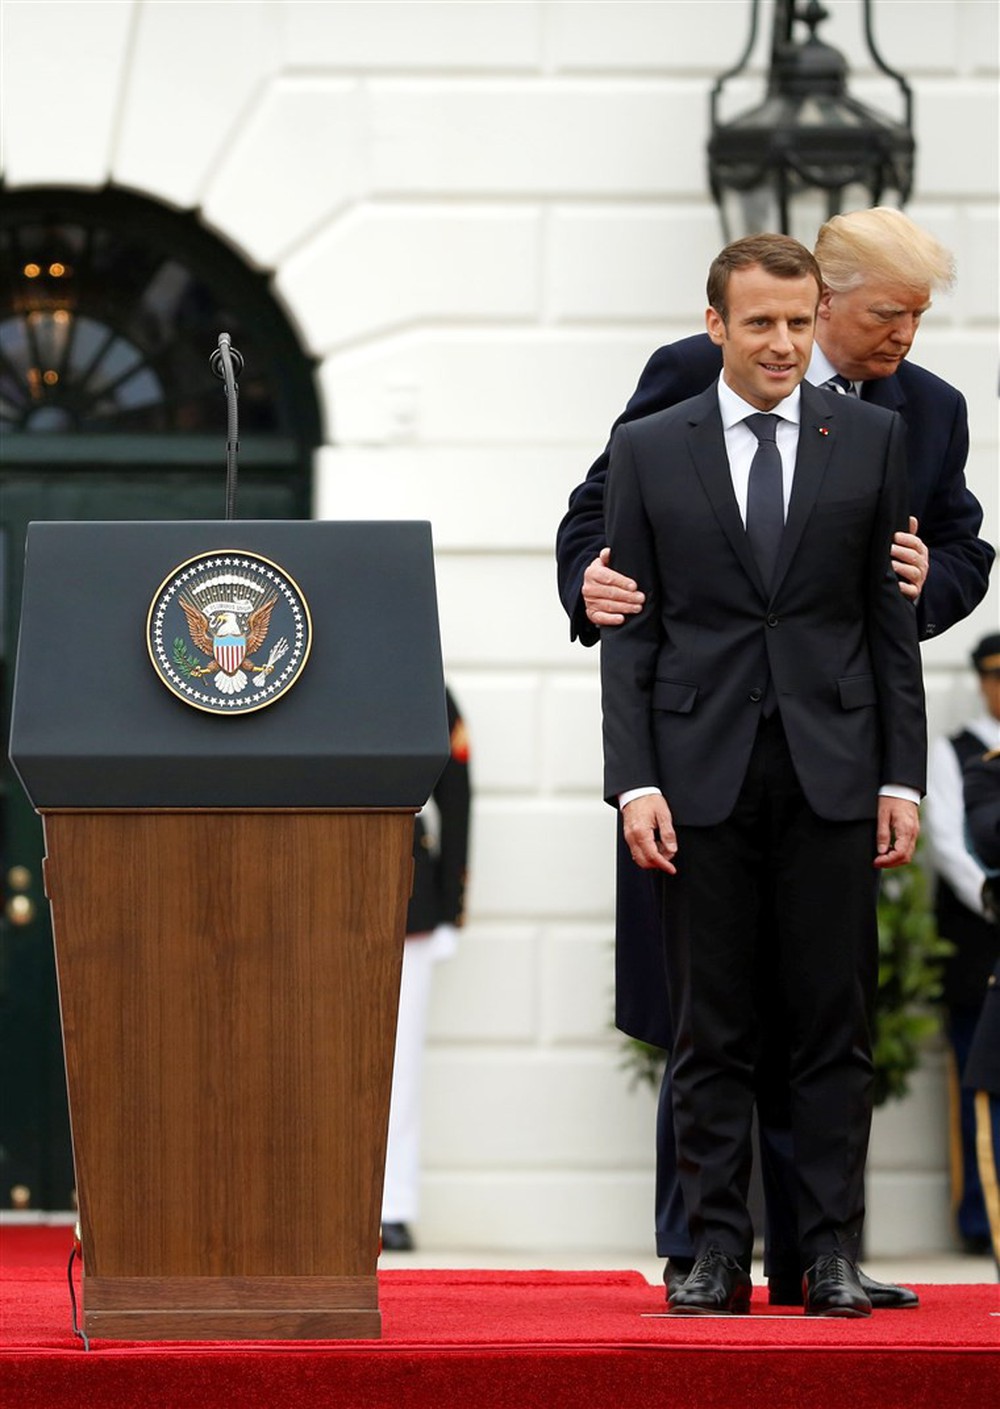 Phản ứng hóa học cực kỳ thú vị giữa 2 TT Trump-Macron: Vỗ đùi, dắt tay đi dọc Nhà Trắng - Ảnh 4.